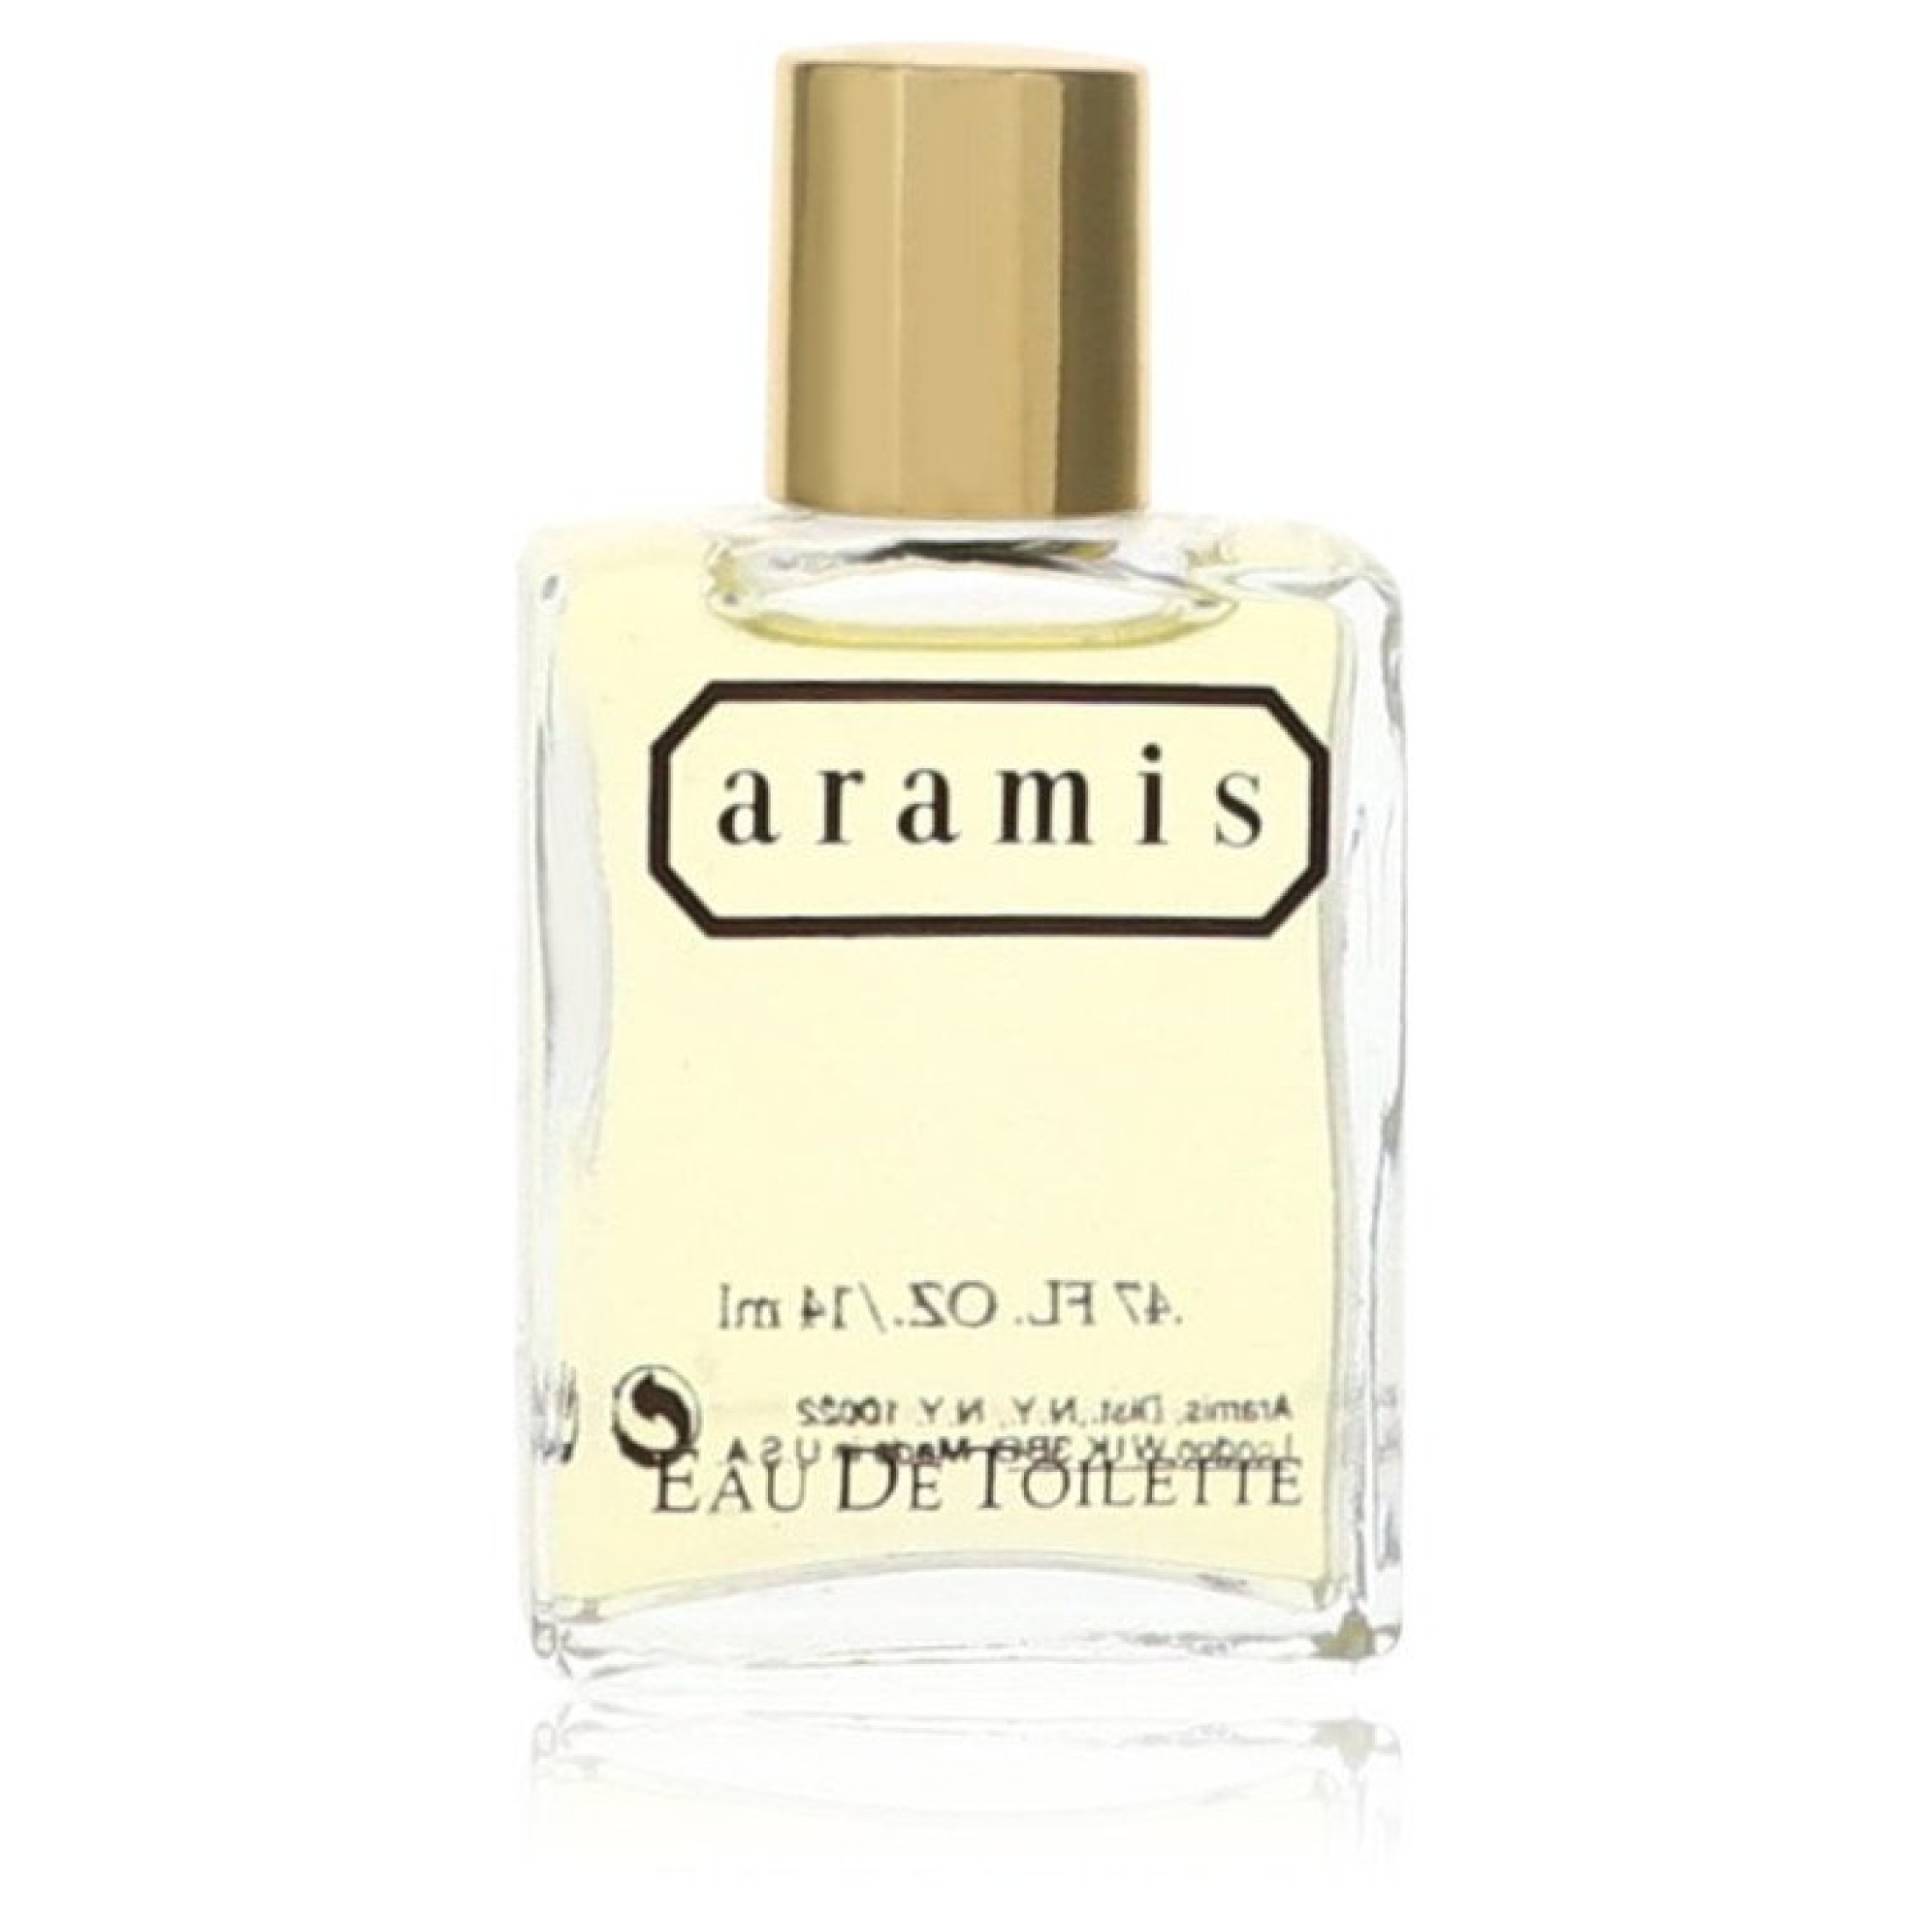 Aramis ARAMIS Eau De Toilette Splash 14 ml von Aramis